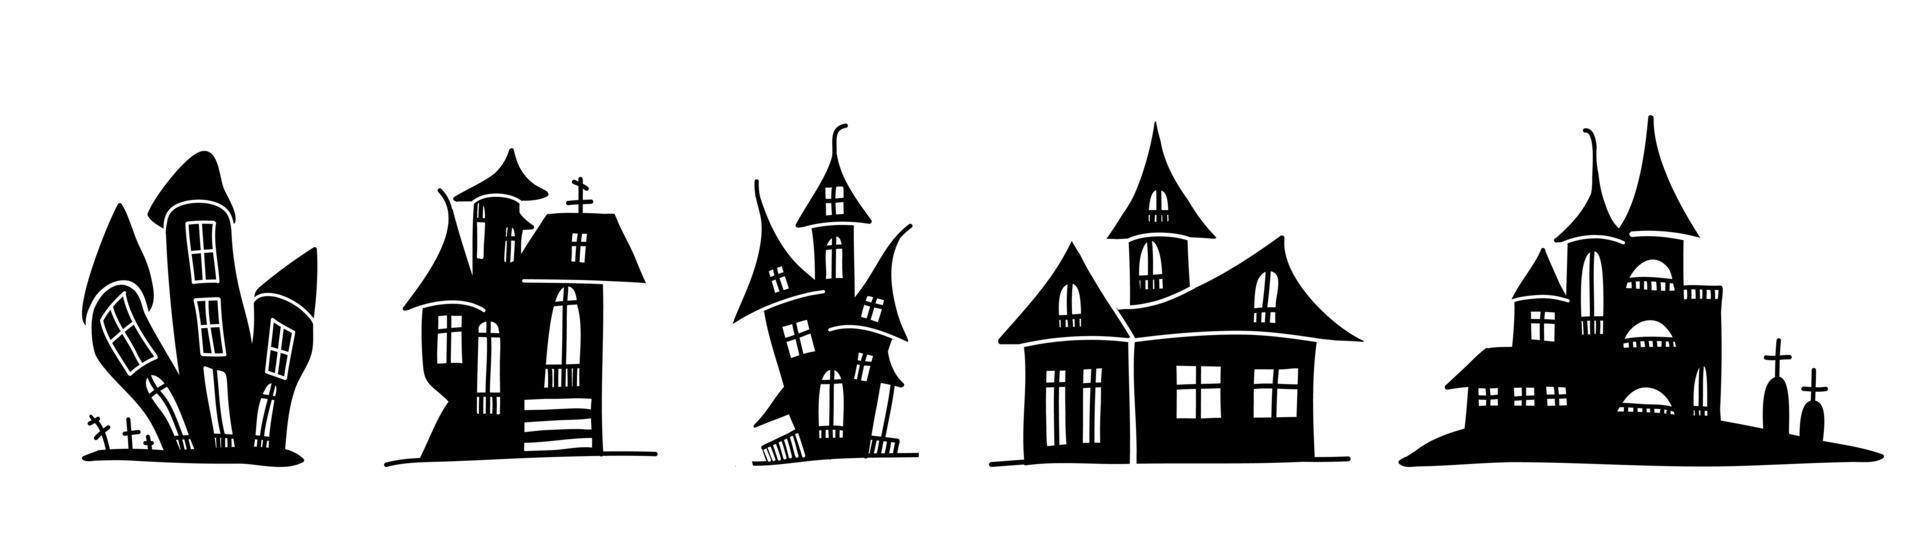 silhouettes de maisons effrayantes dans un style doodle. vecteur